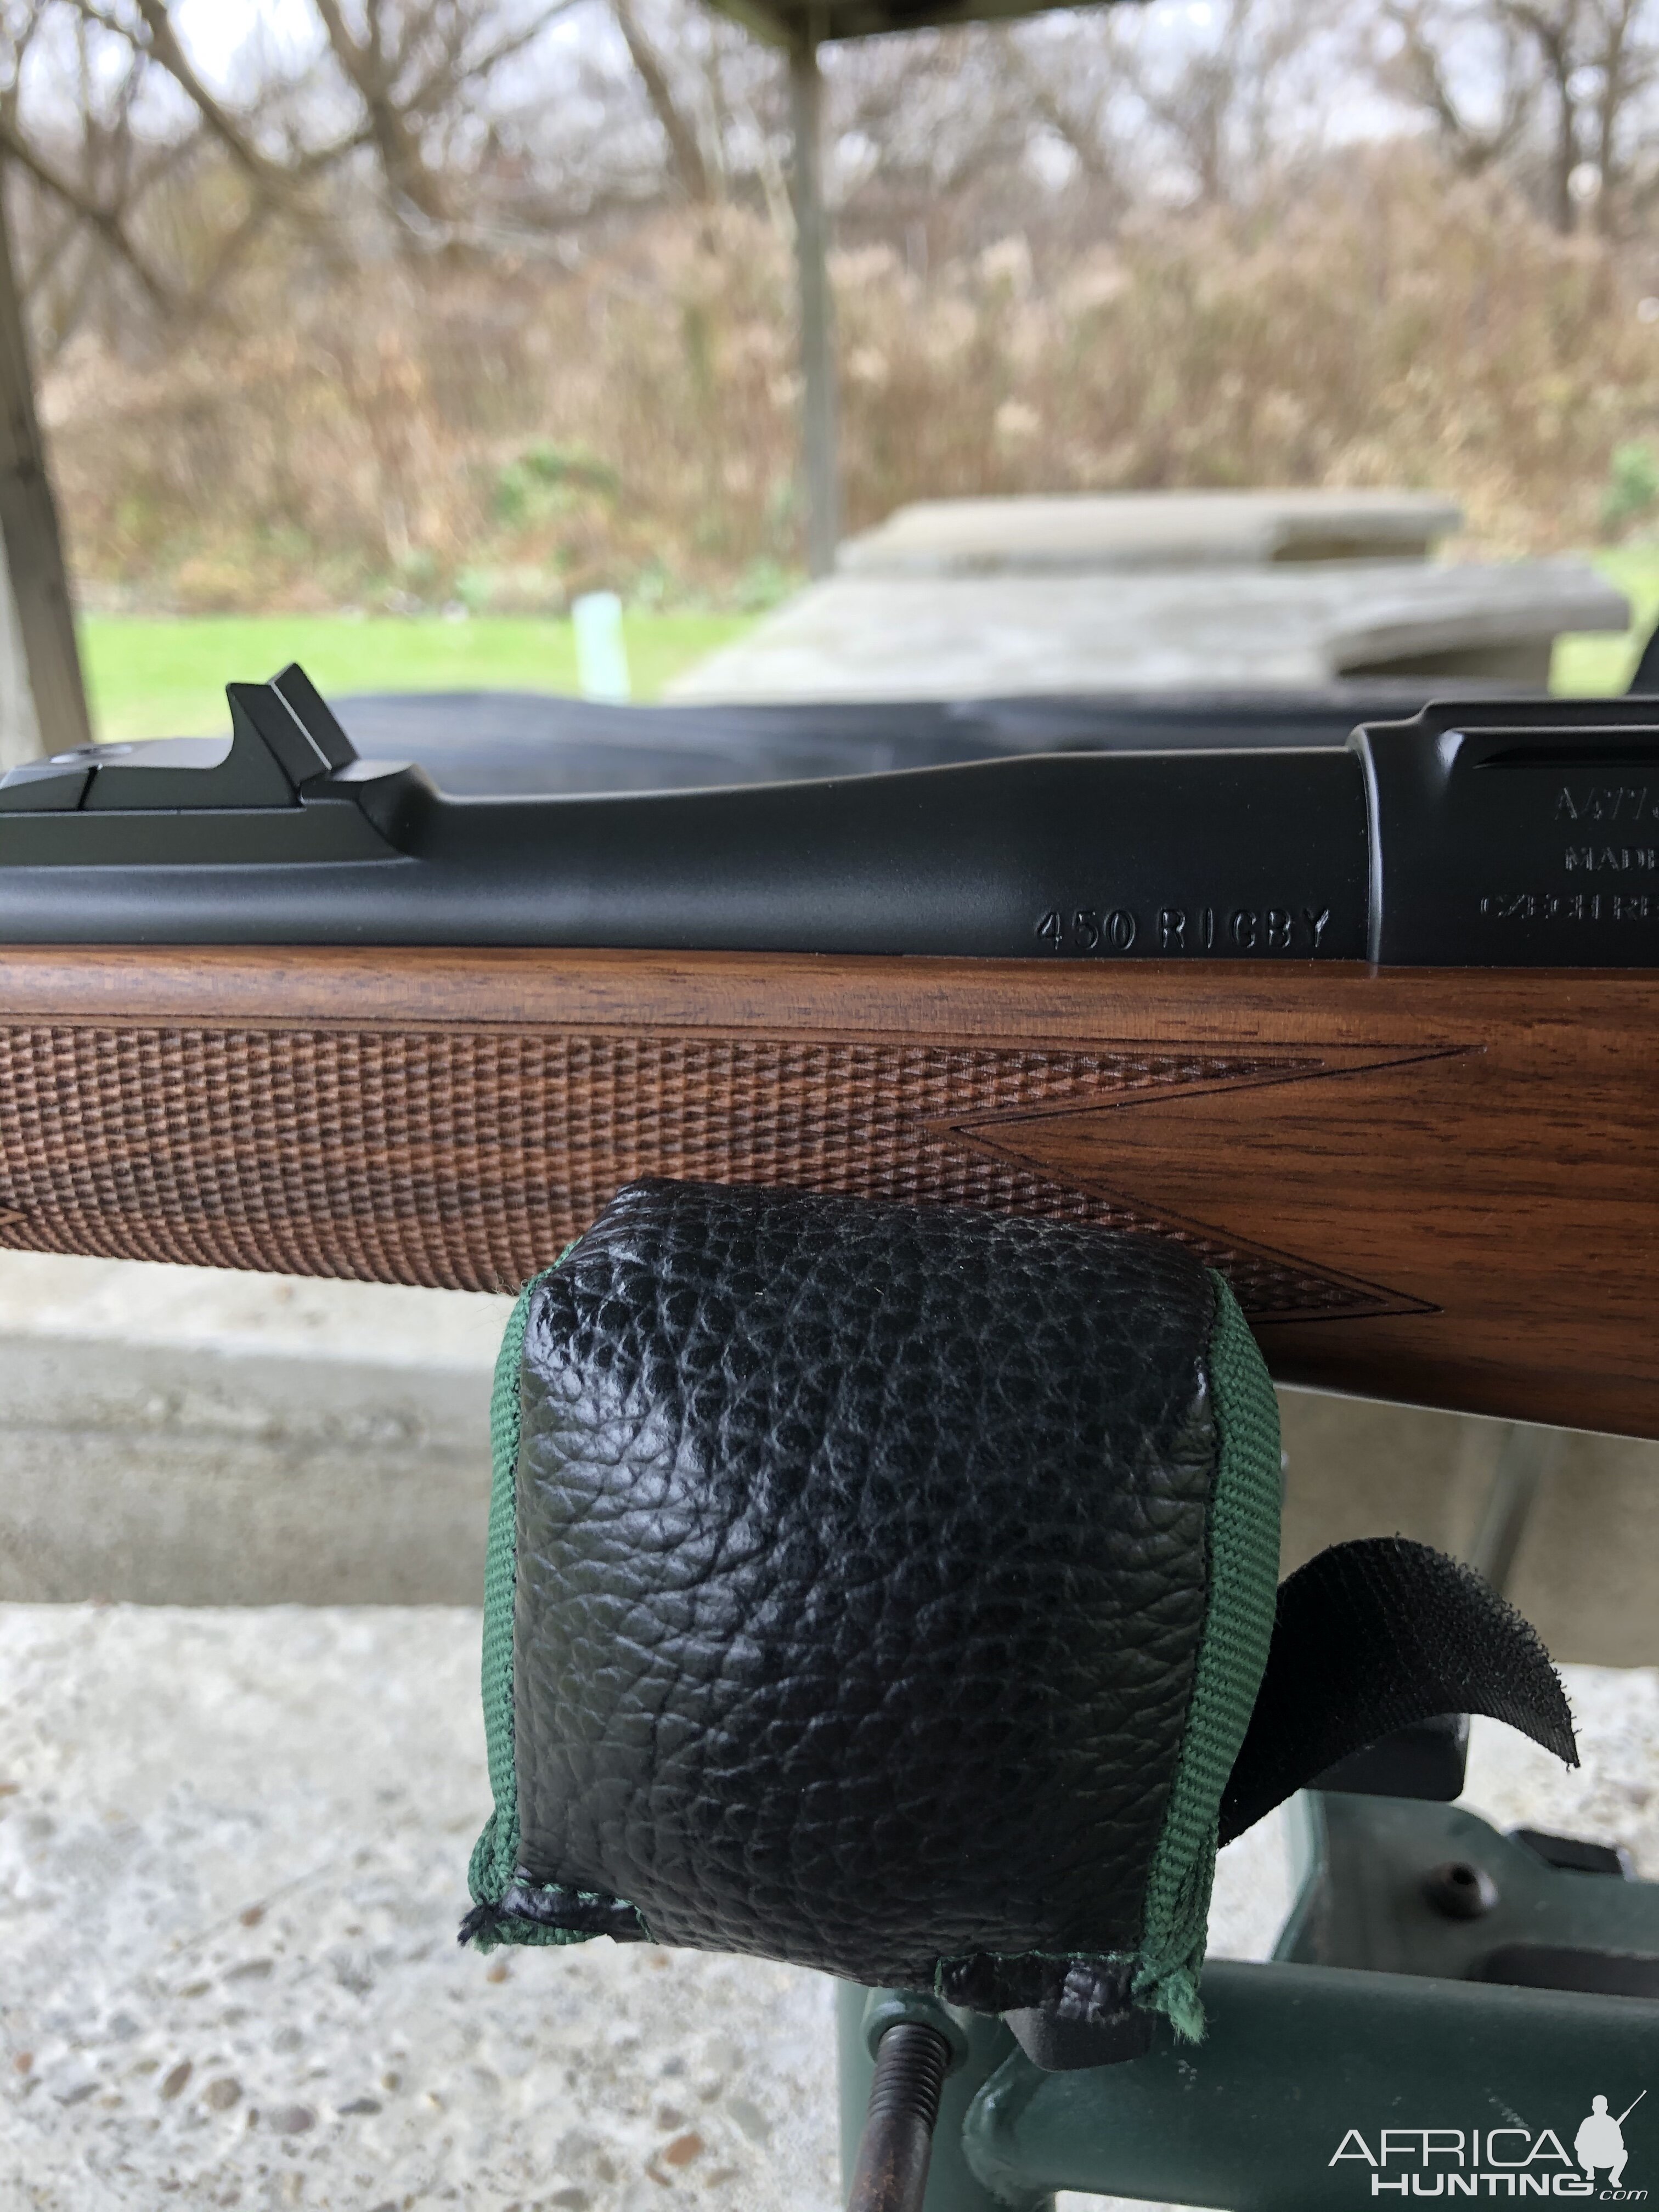 Cz 550 Safari Classic Rifle in .450 Rigby